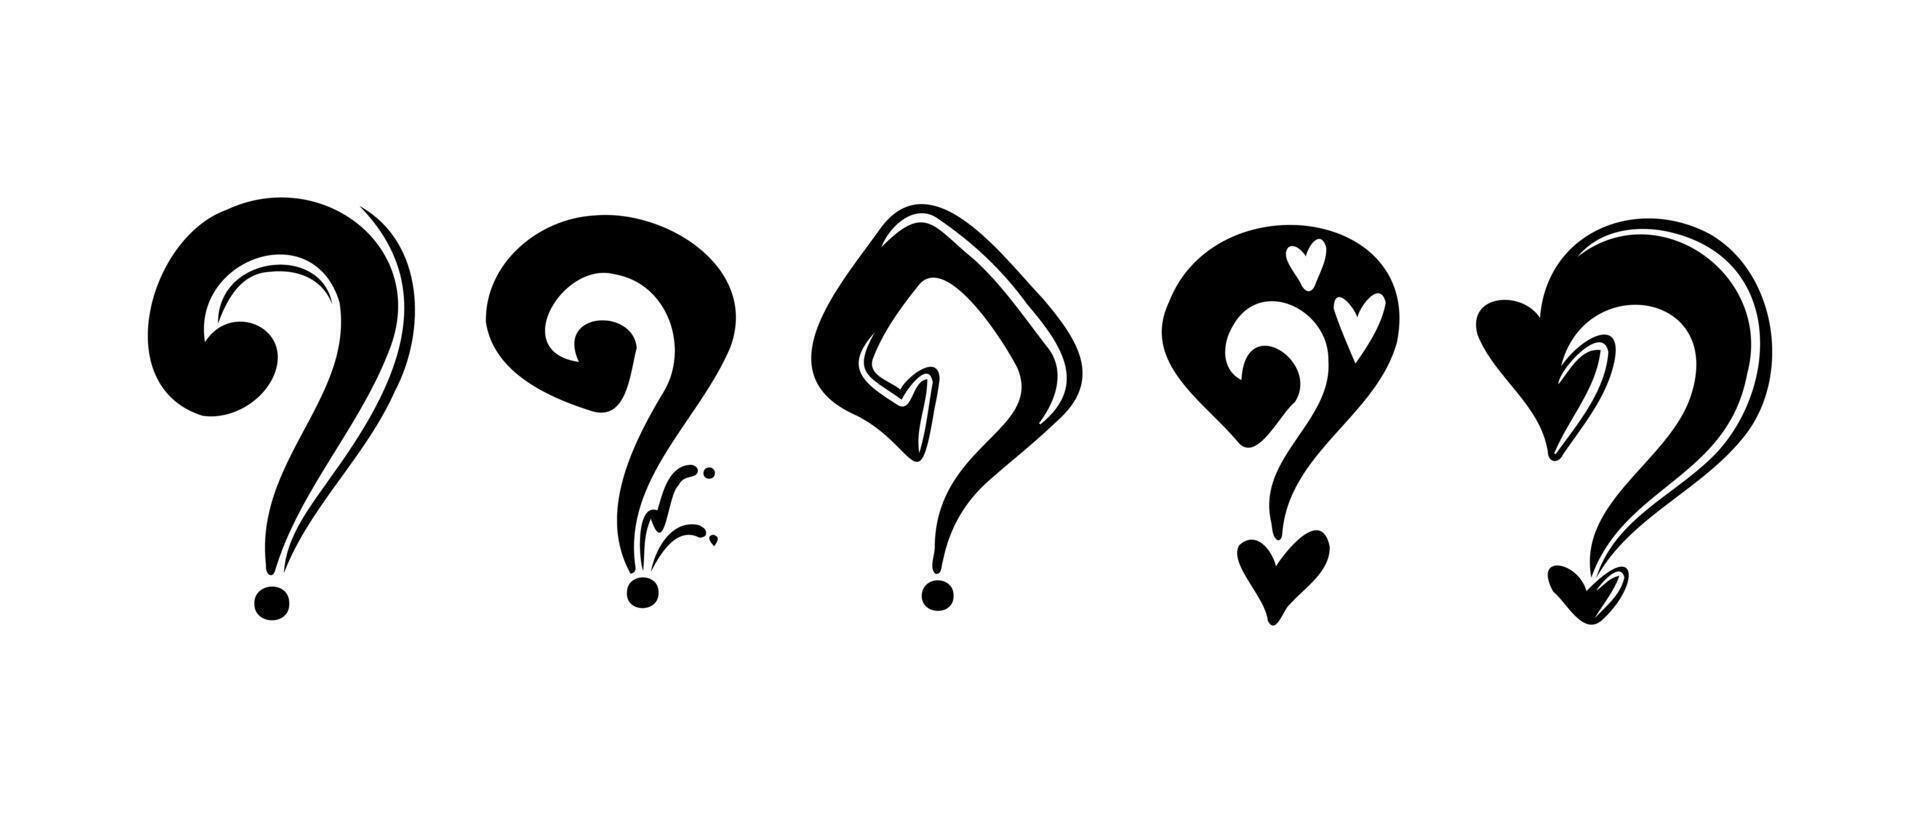 doodle fragezeichen, zeichen und symbol für design-, präsentations- oder website-elemente. vektor